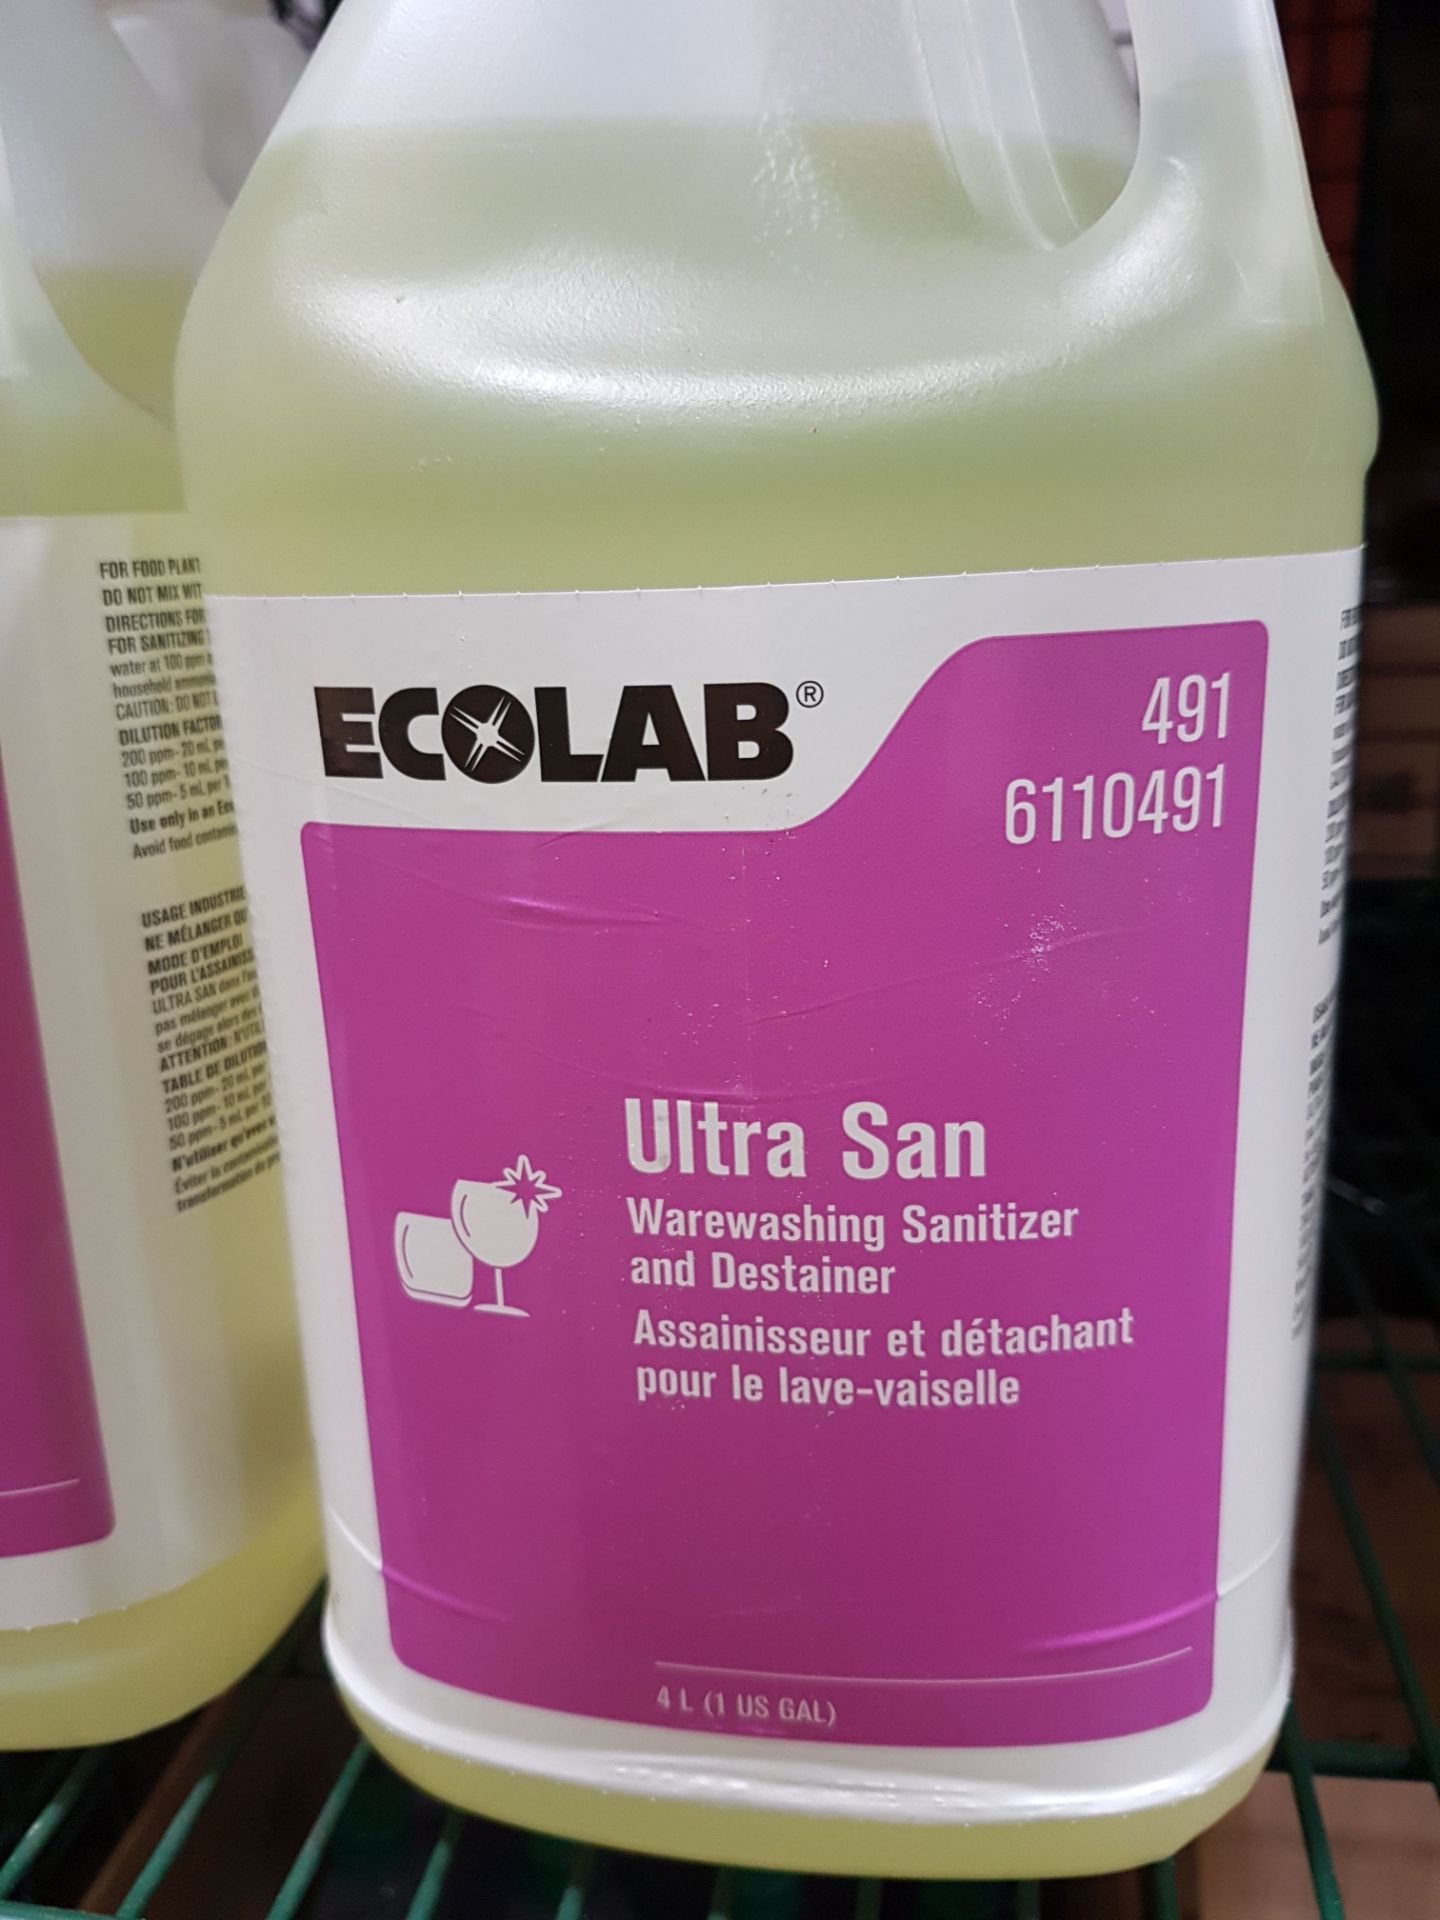 Ecolab Ultra San Warewashing Sanitizer and Destainer - 8 x 4lt Jugs